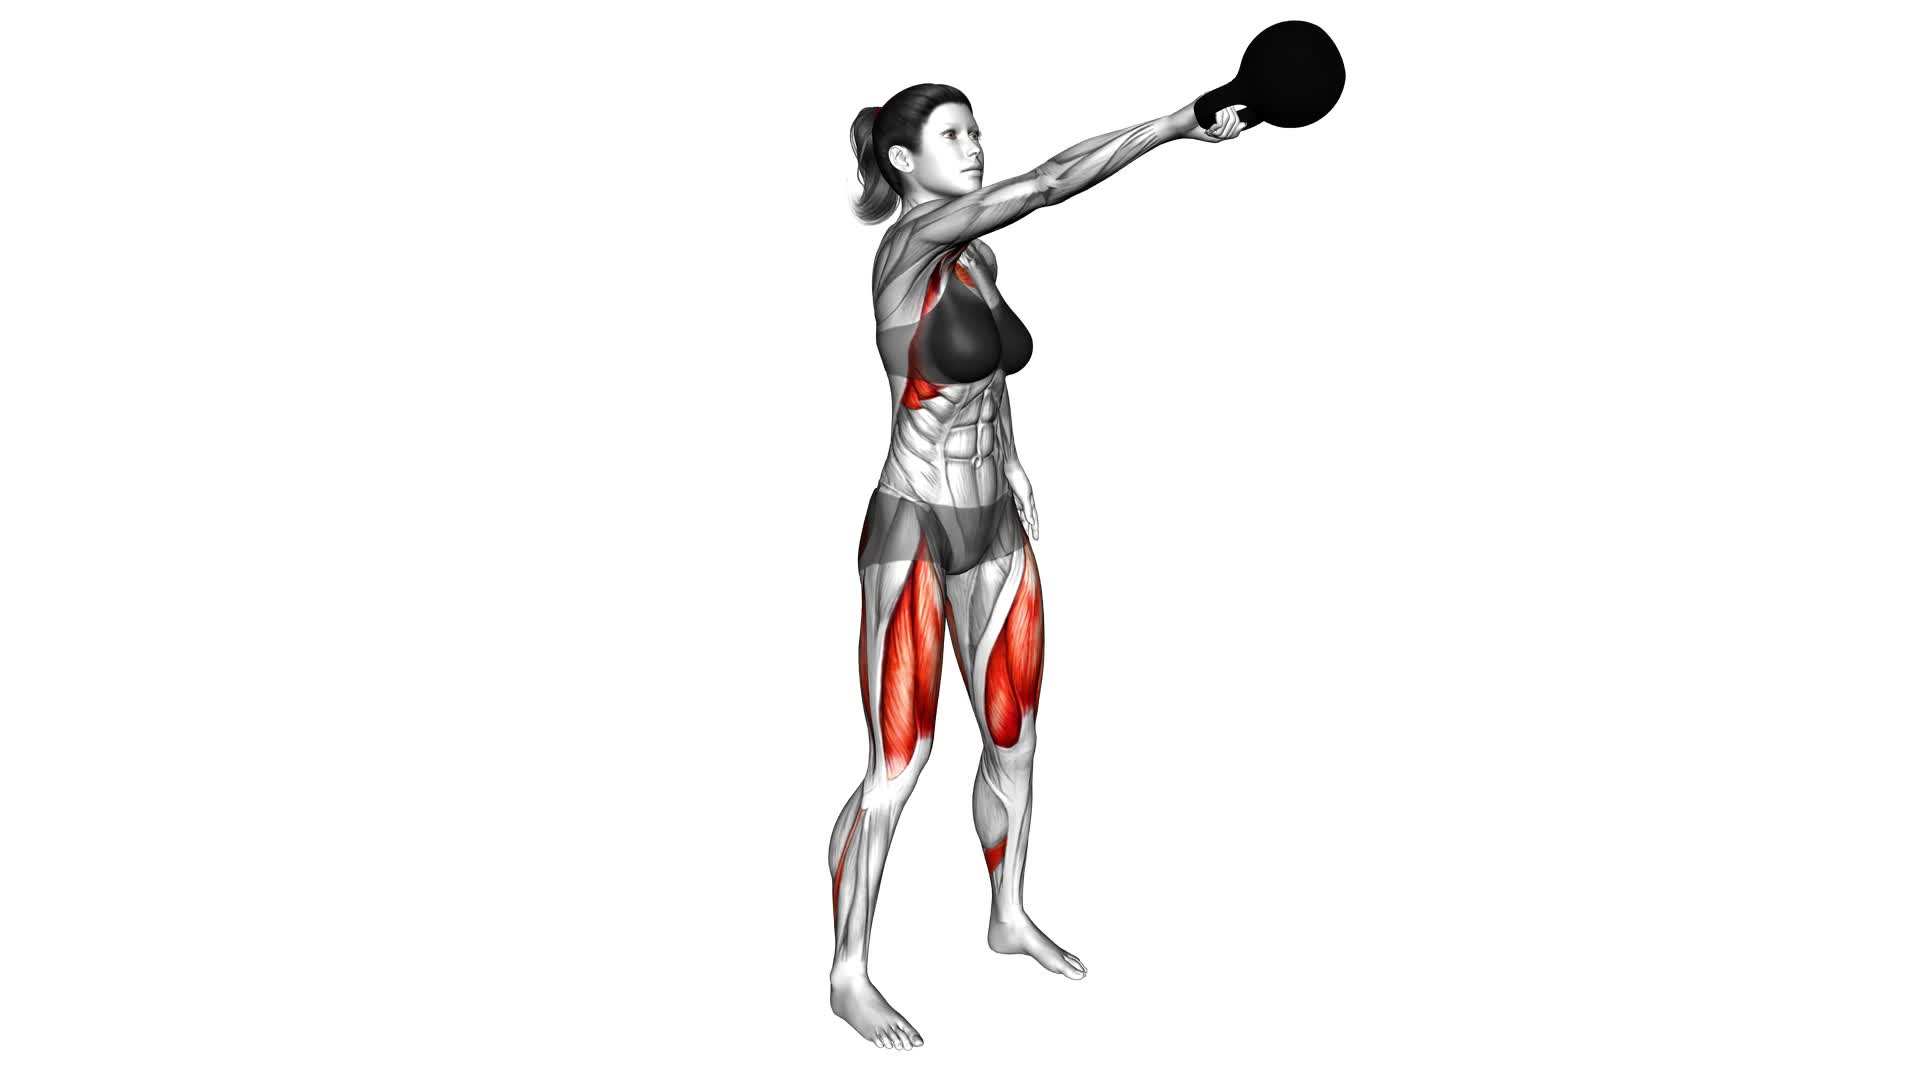 Kettlebell Single Arm Swing (female) - Video Exercise Guide & Tips